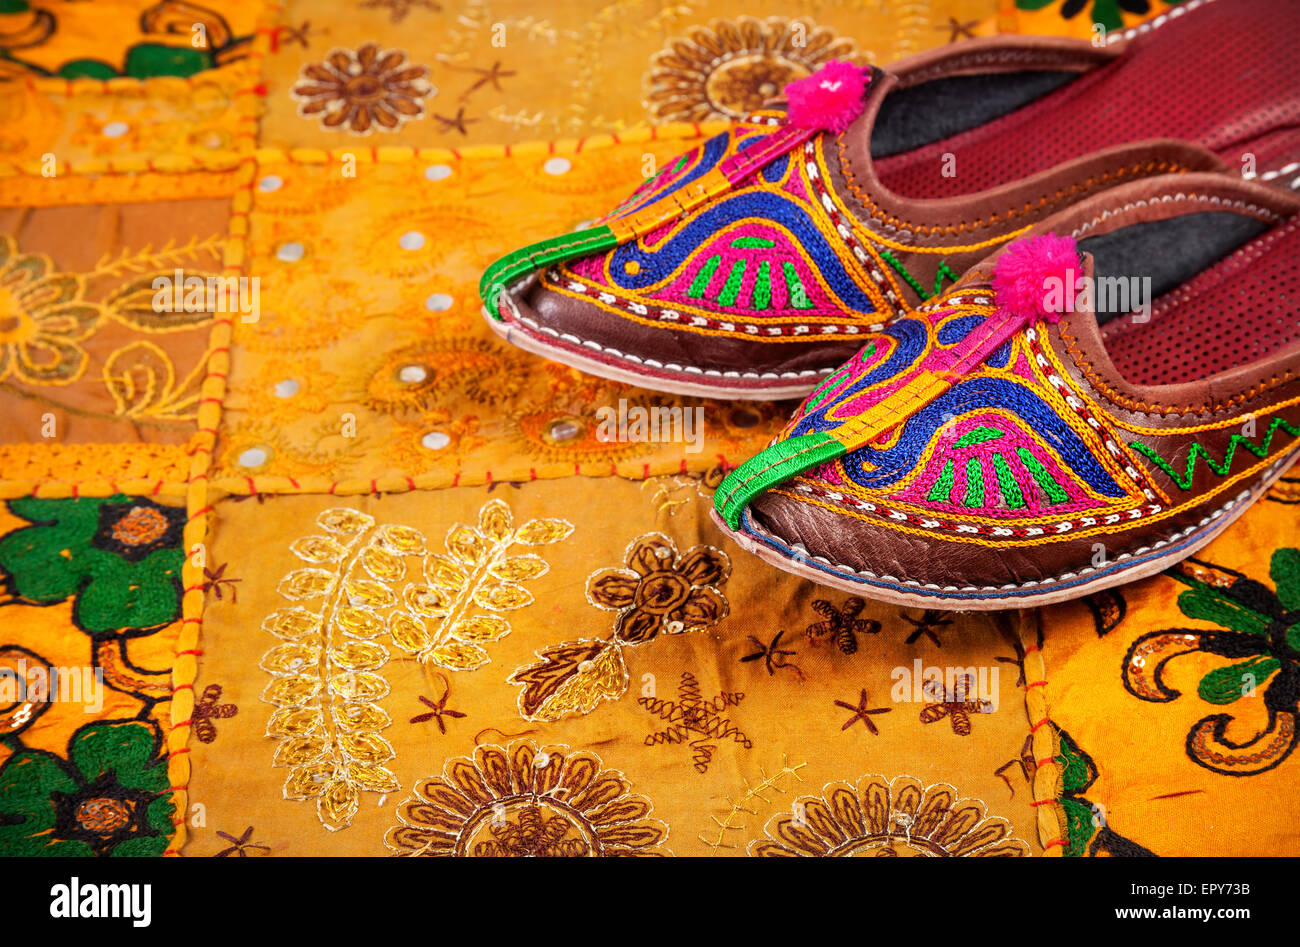 Colorate scarpe etniche su giallo Rajasthan fodera per cuscino sul mercato delle pulci in India Foto Stock